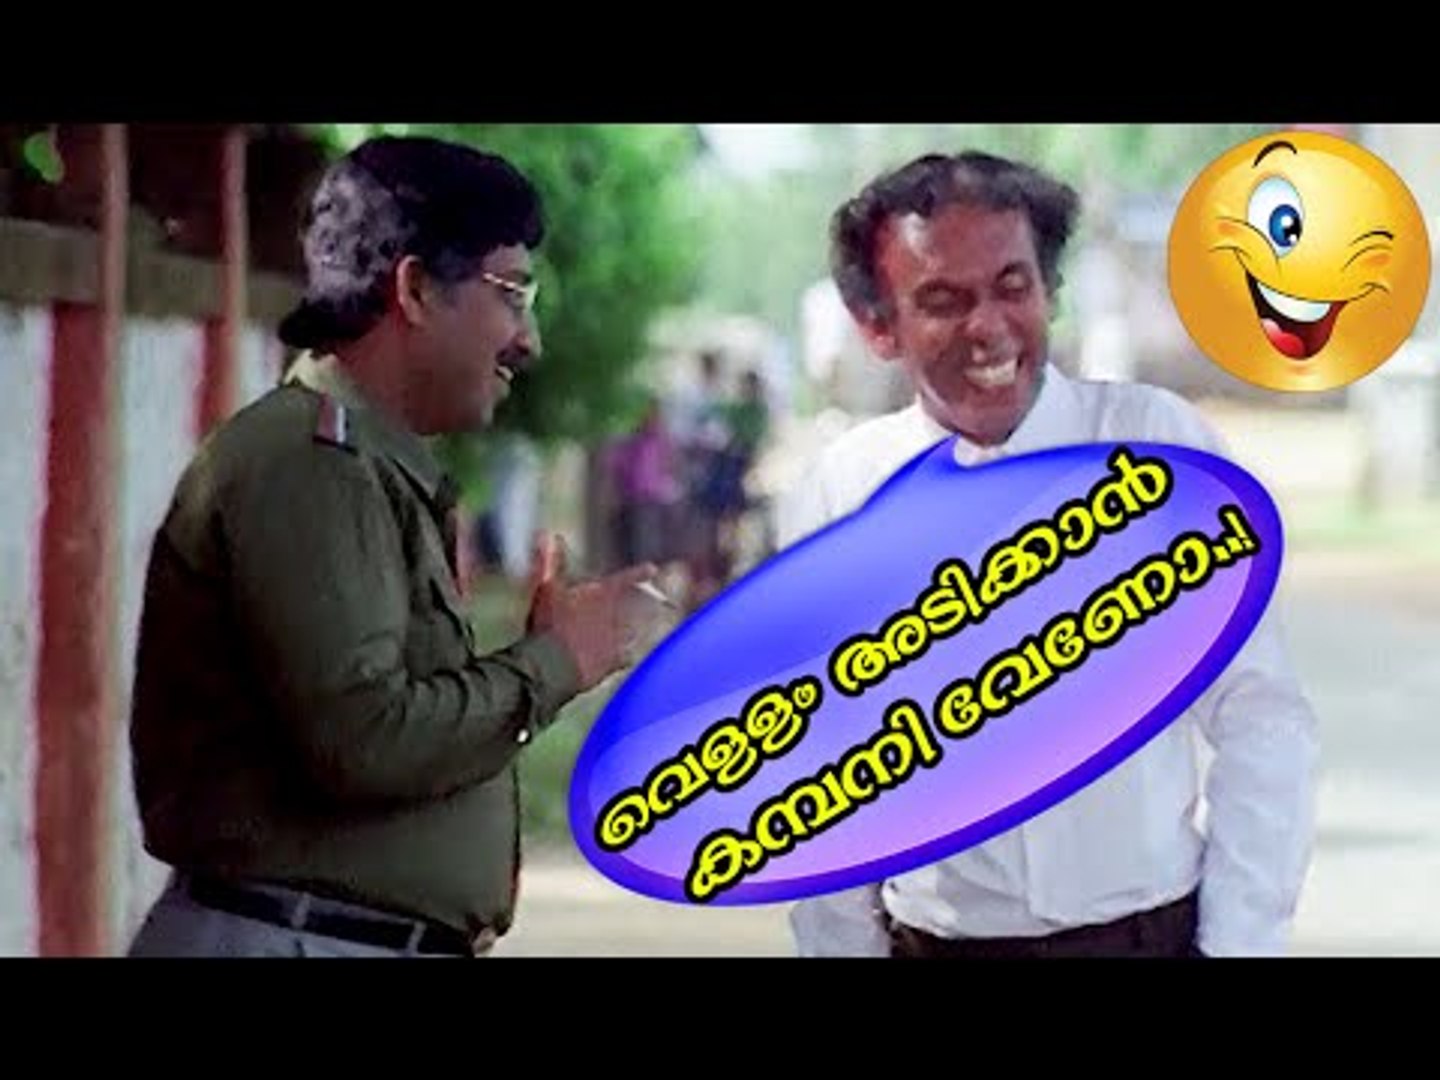 വെള്ളം അടിക്കാൻ കബനി വേണോ... | Malayalam Comedy Movies | Malayalam Comedy Scenes From Movies [HD]